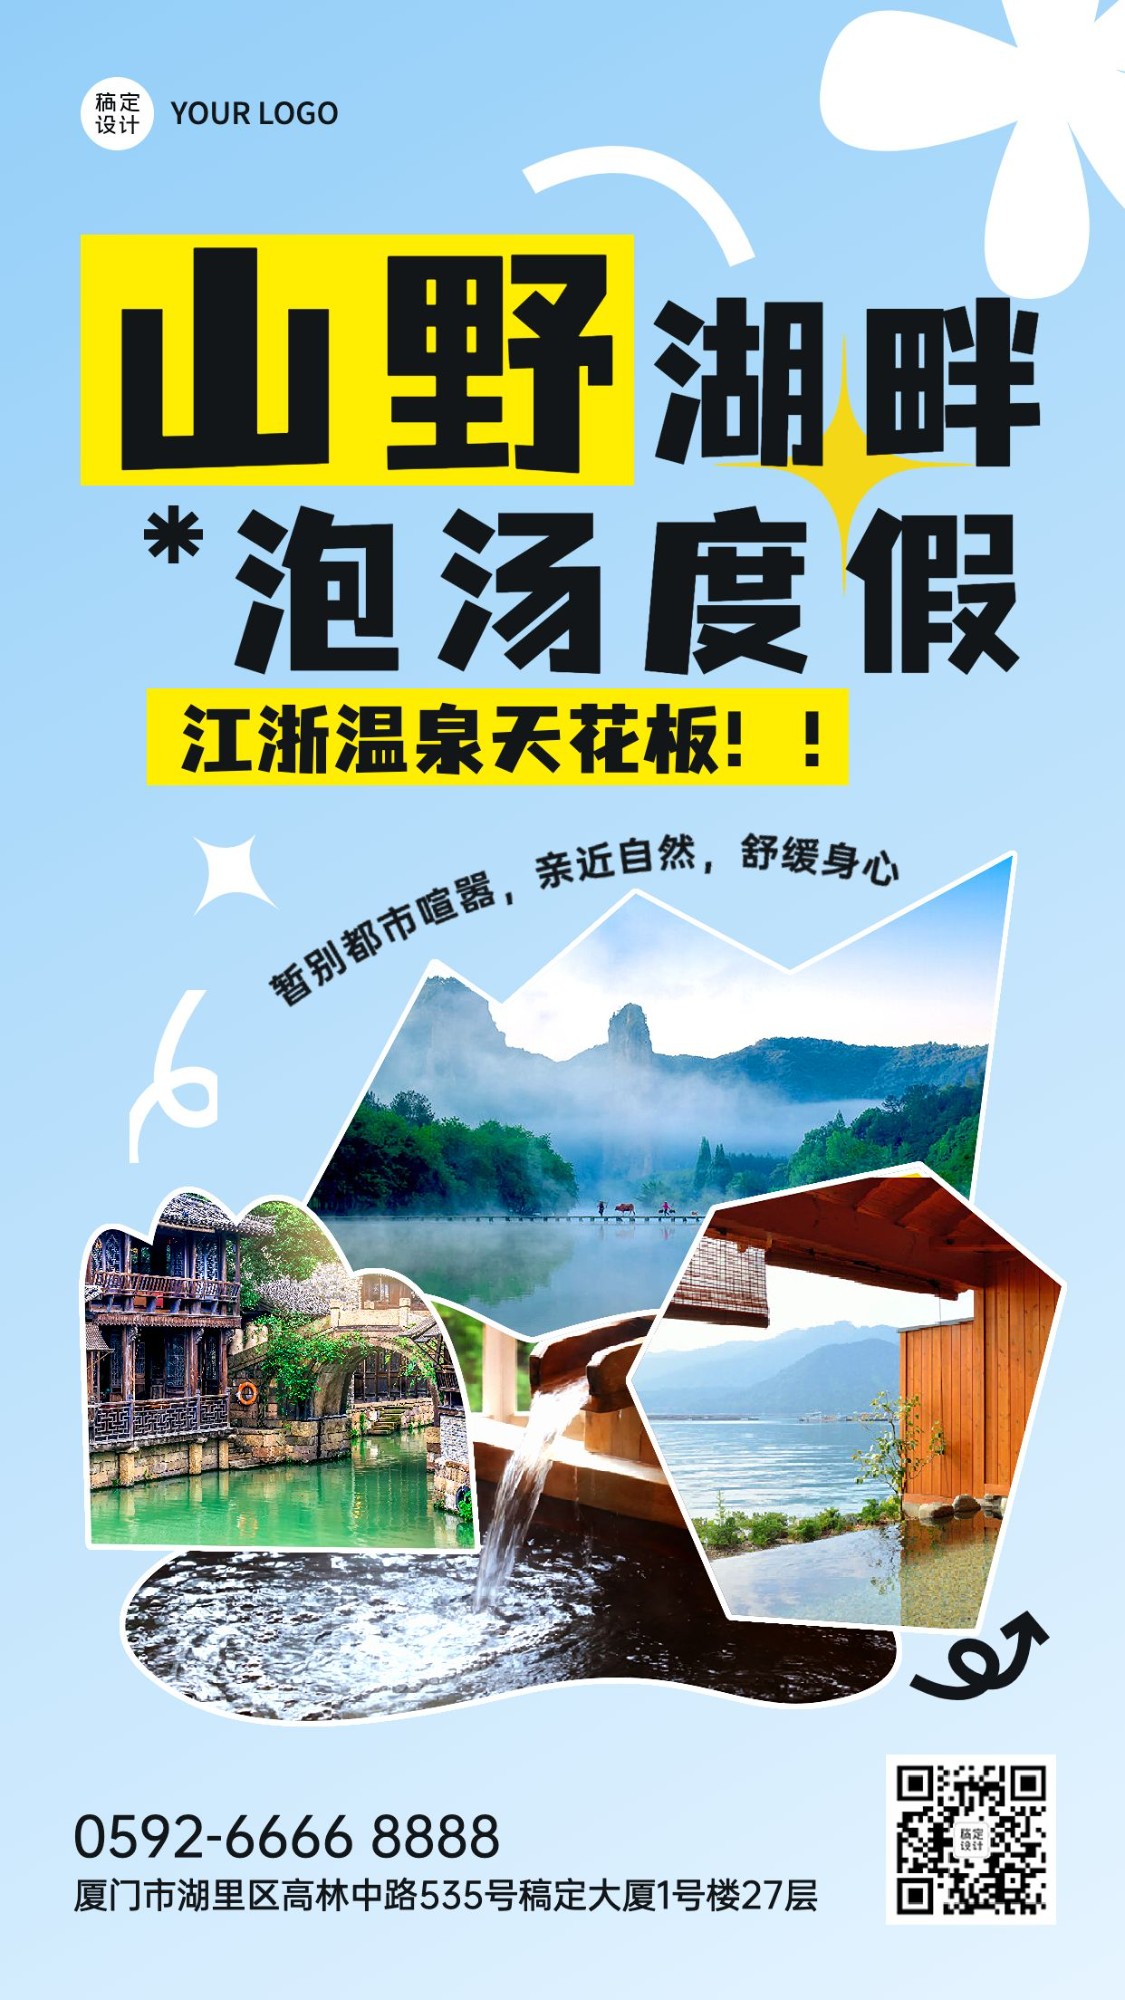 山野湖畔温泉度假旅游粗野主义图框竖版海报预览效果